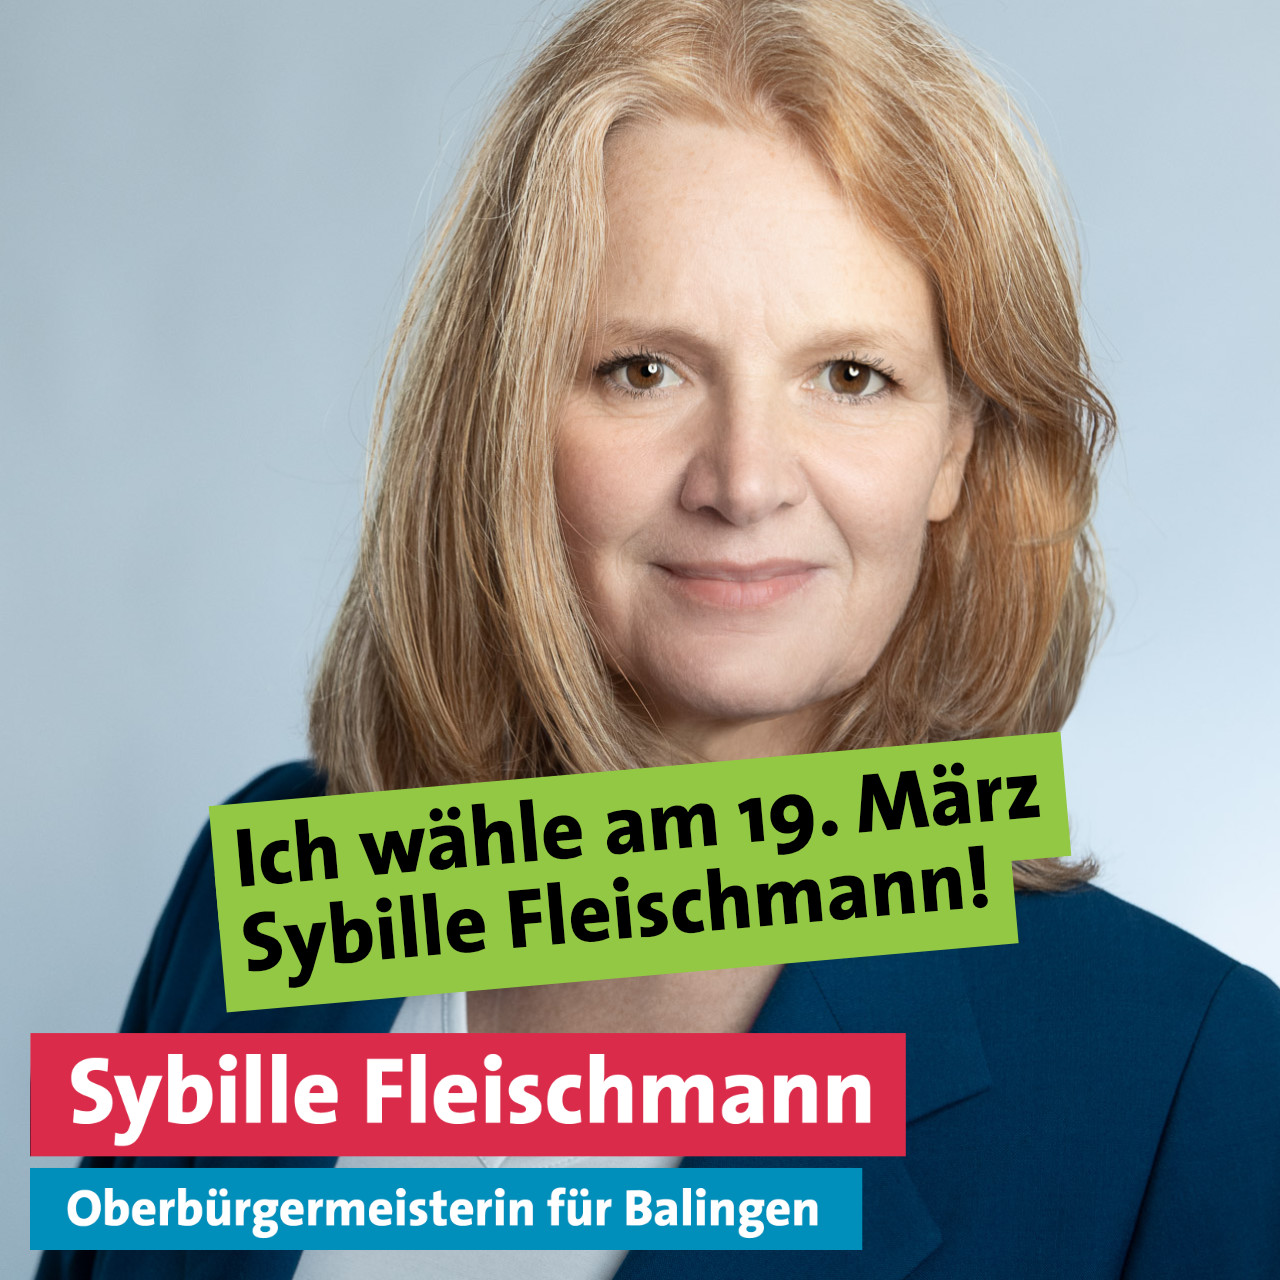 Ich wähle am 19. März Sybille Fleischmann!